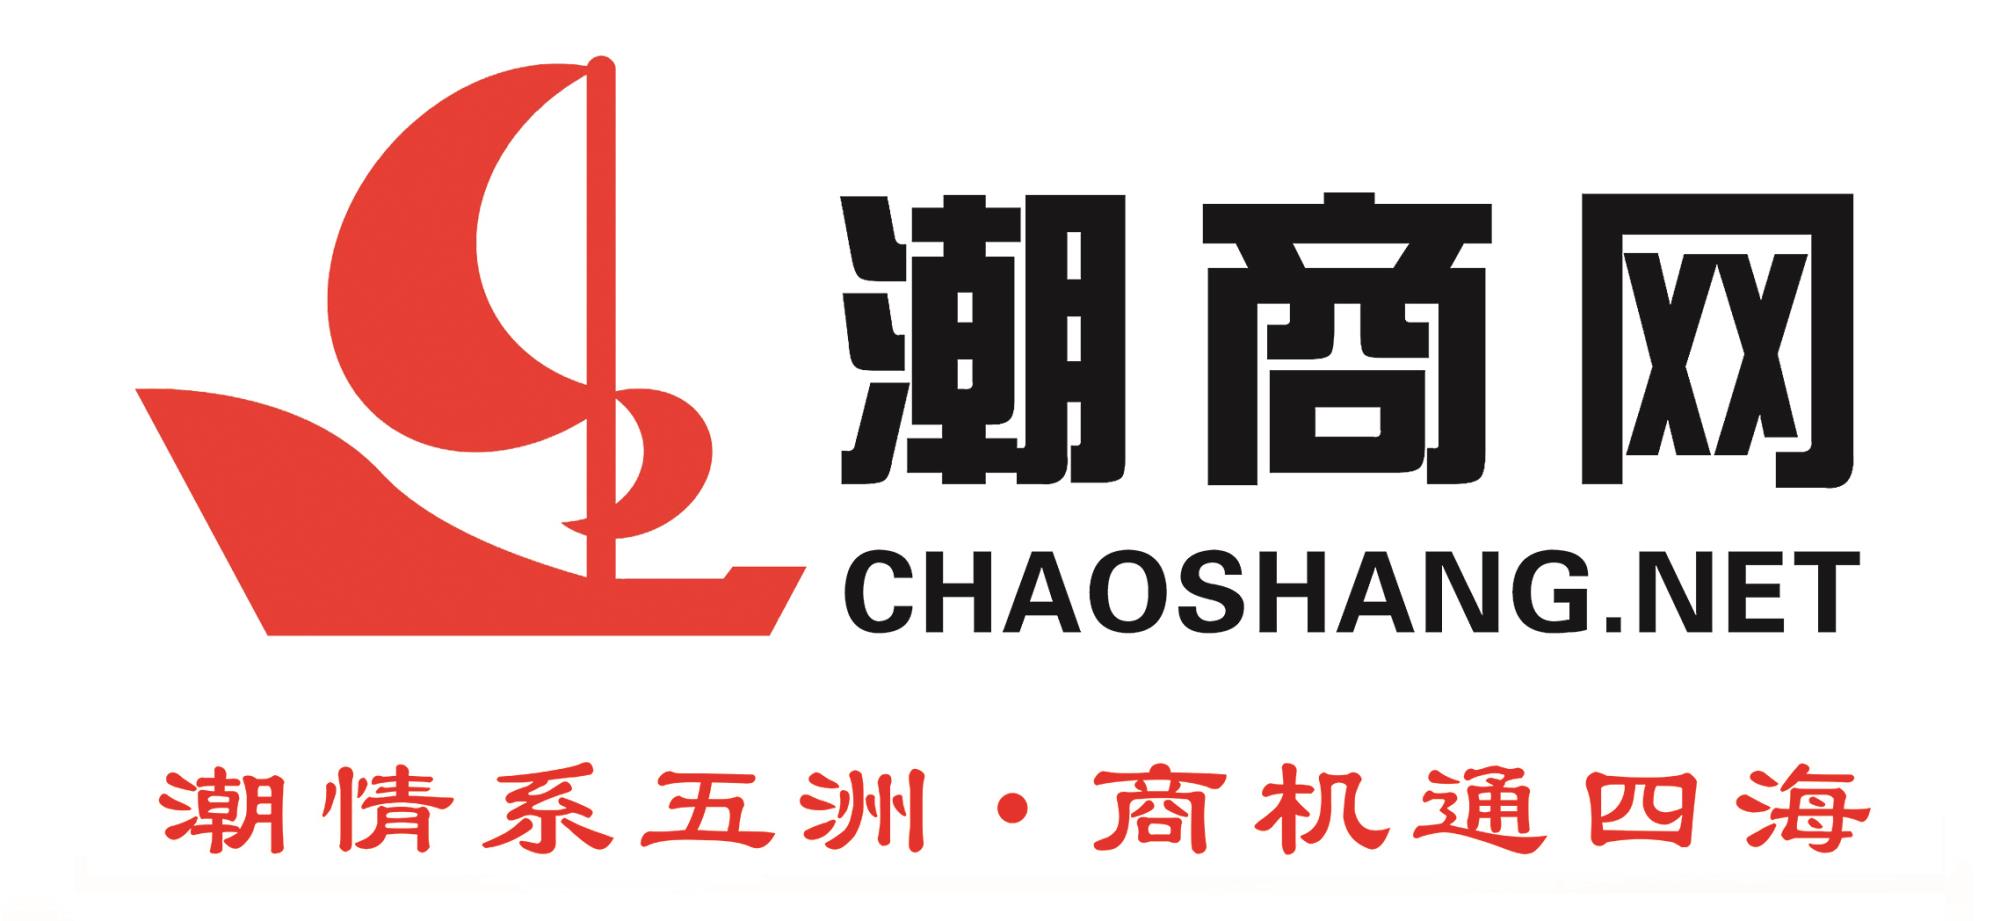 chaoshang.net